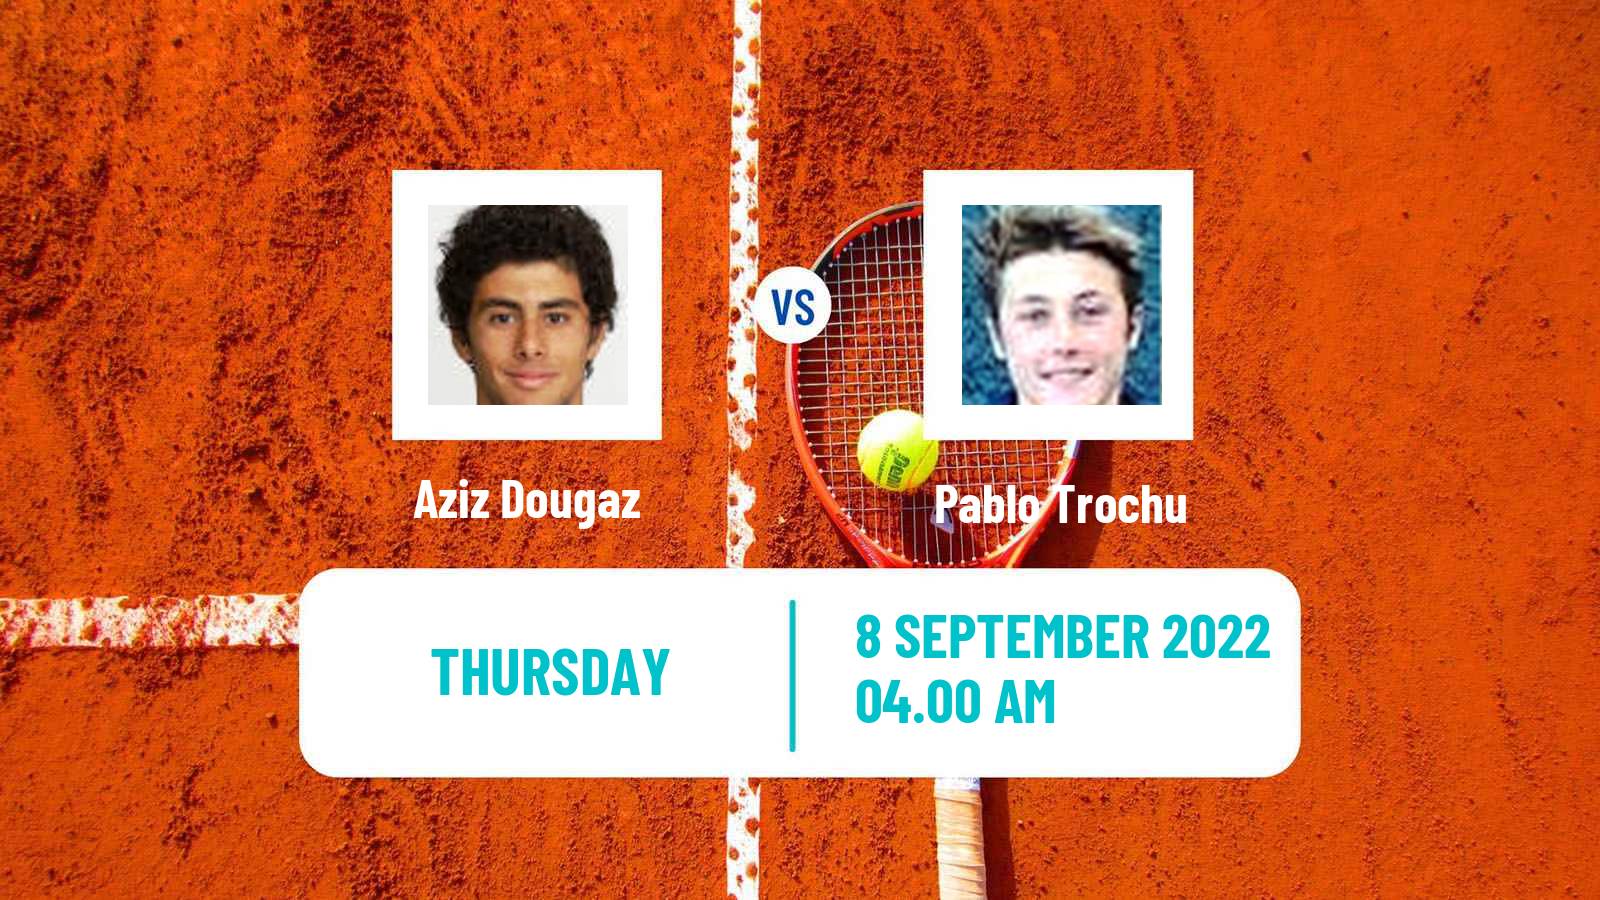 Tennis ITF Tournaments Aziz Dougaz - Pablo Trochu